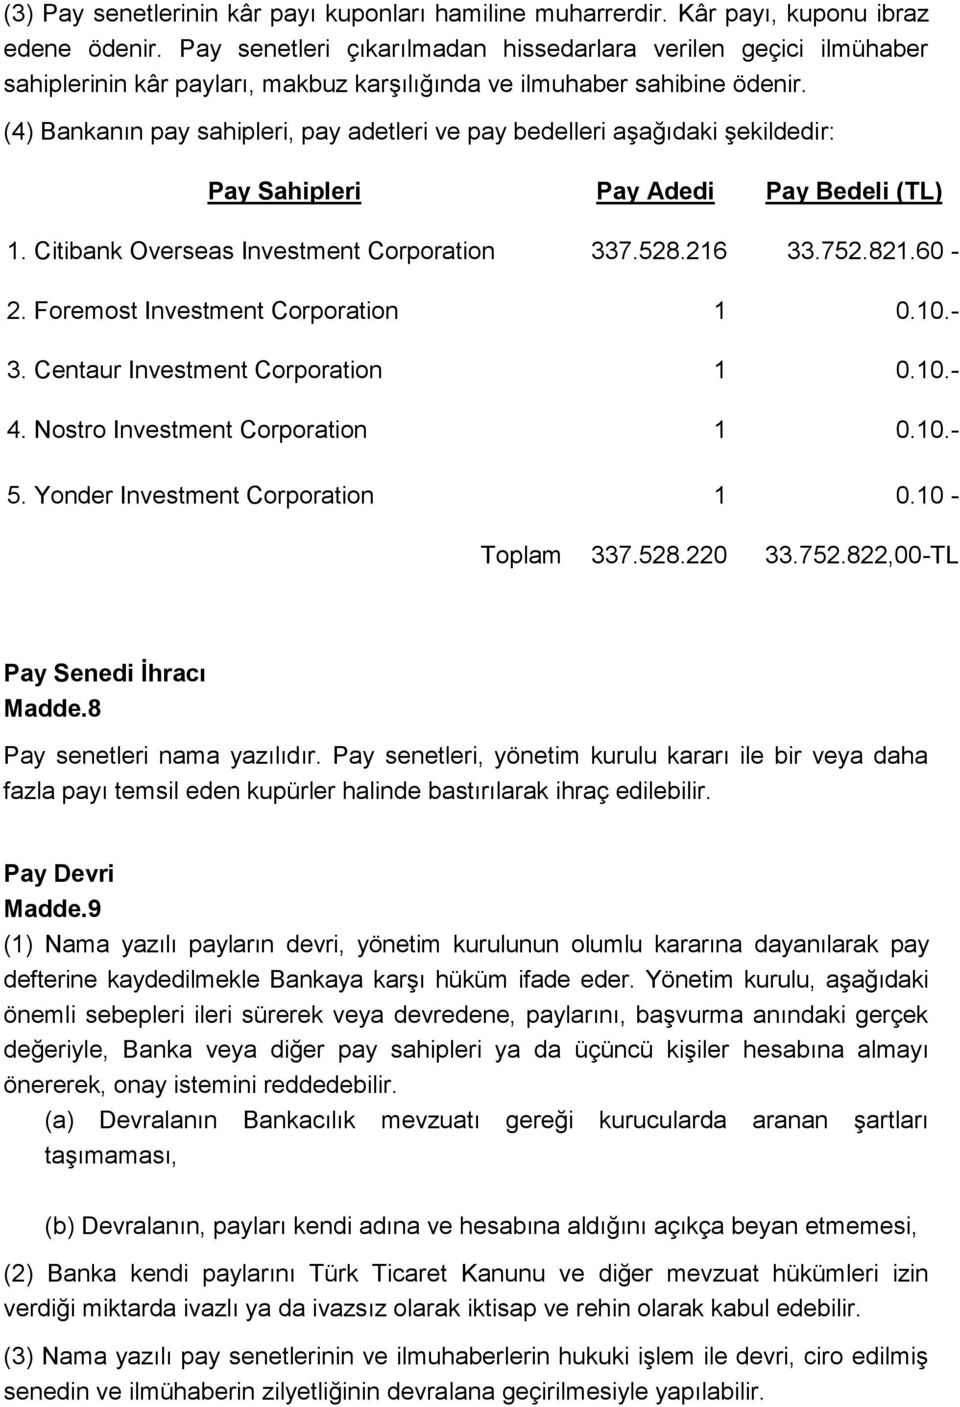 (4) Bankanın pay sahipleri, pay adetleri ve pay bedelleri aşağıdaki şekildedir: Pay Sahipleri Pay Adedi Pay Bedeli (TL) 1. Citibank Overseas Investment Corporation 337.528.216 33.752.821.60-2.